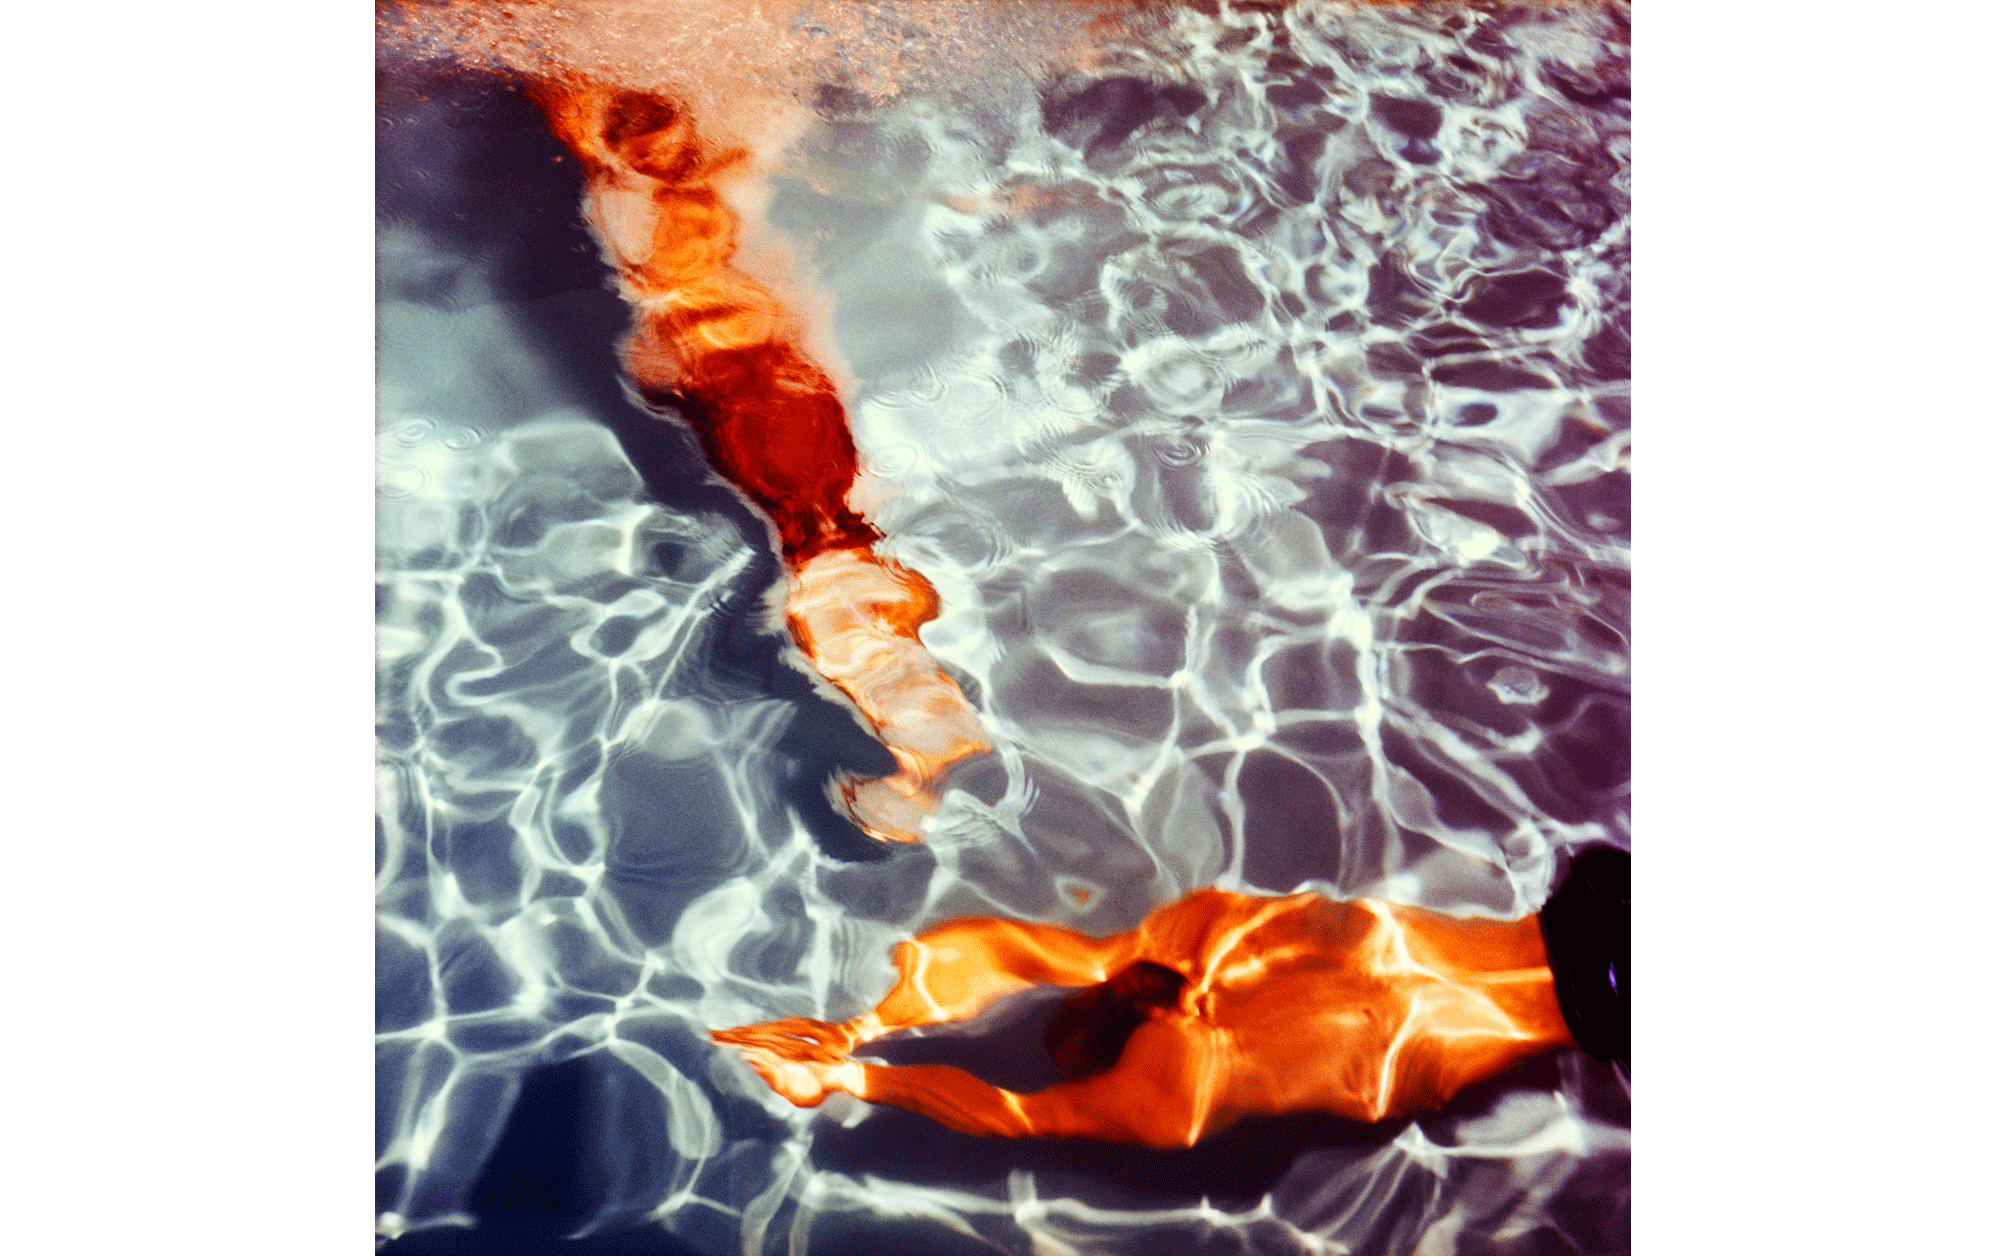 ロンドンから、夏に見たい展覧会のご案内。カリーヌ・ラヴェルによる幻想的なプールの写真 | Poolscape 58